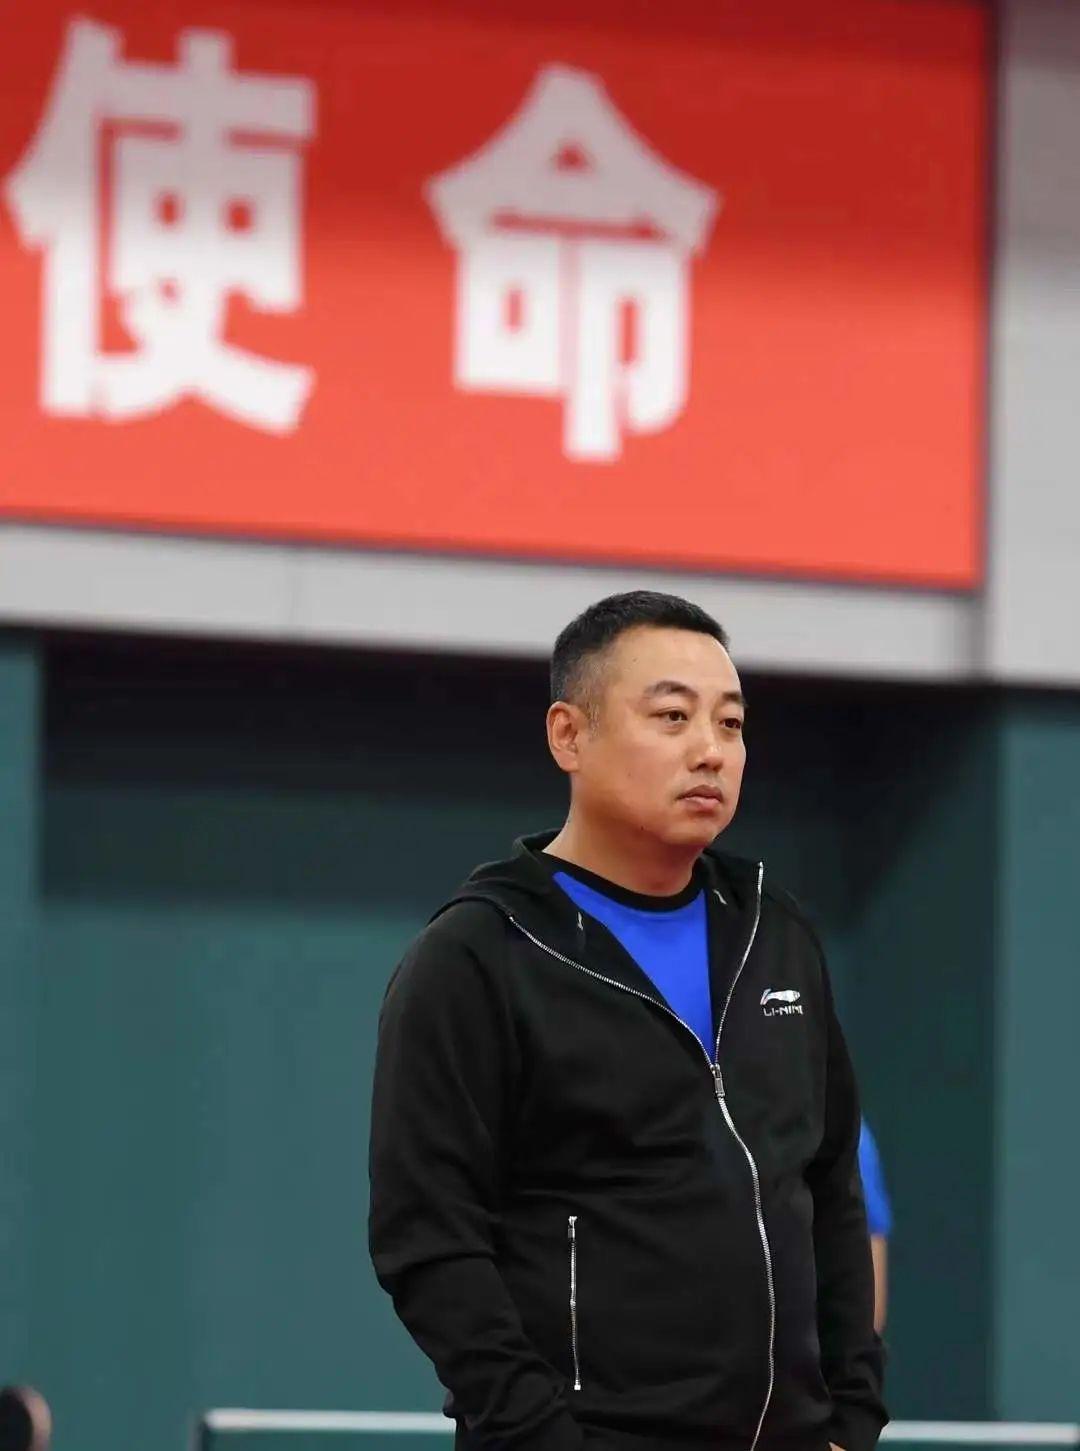 刘国梁卸任总教练 率队夺37冠无愧金牌教头-国际在线